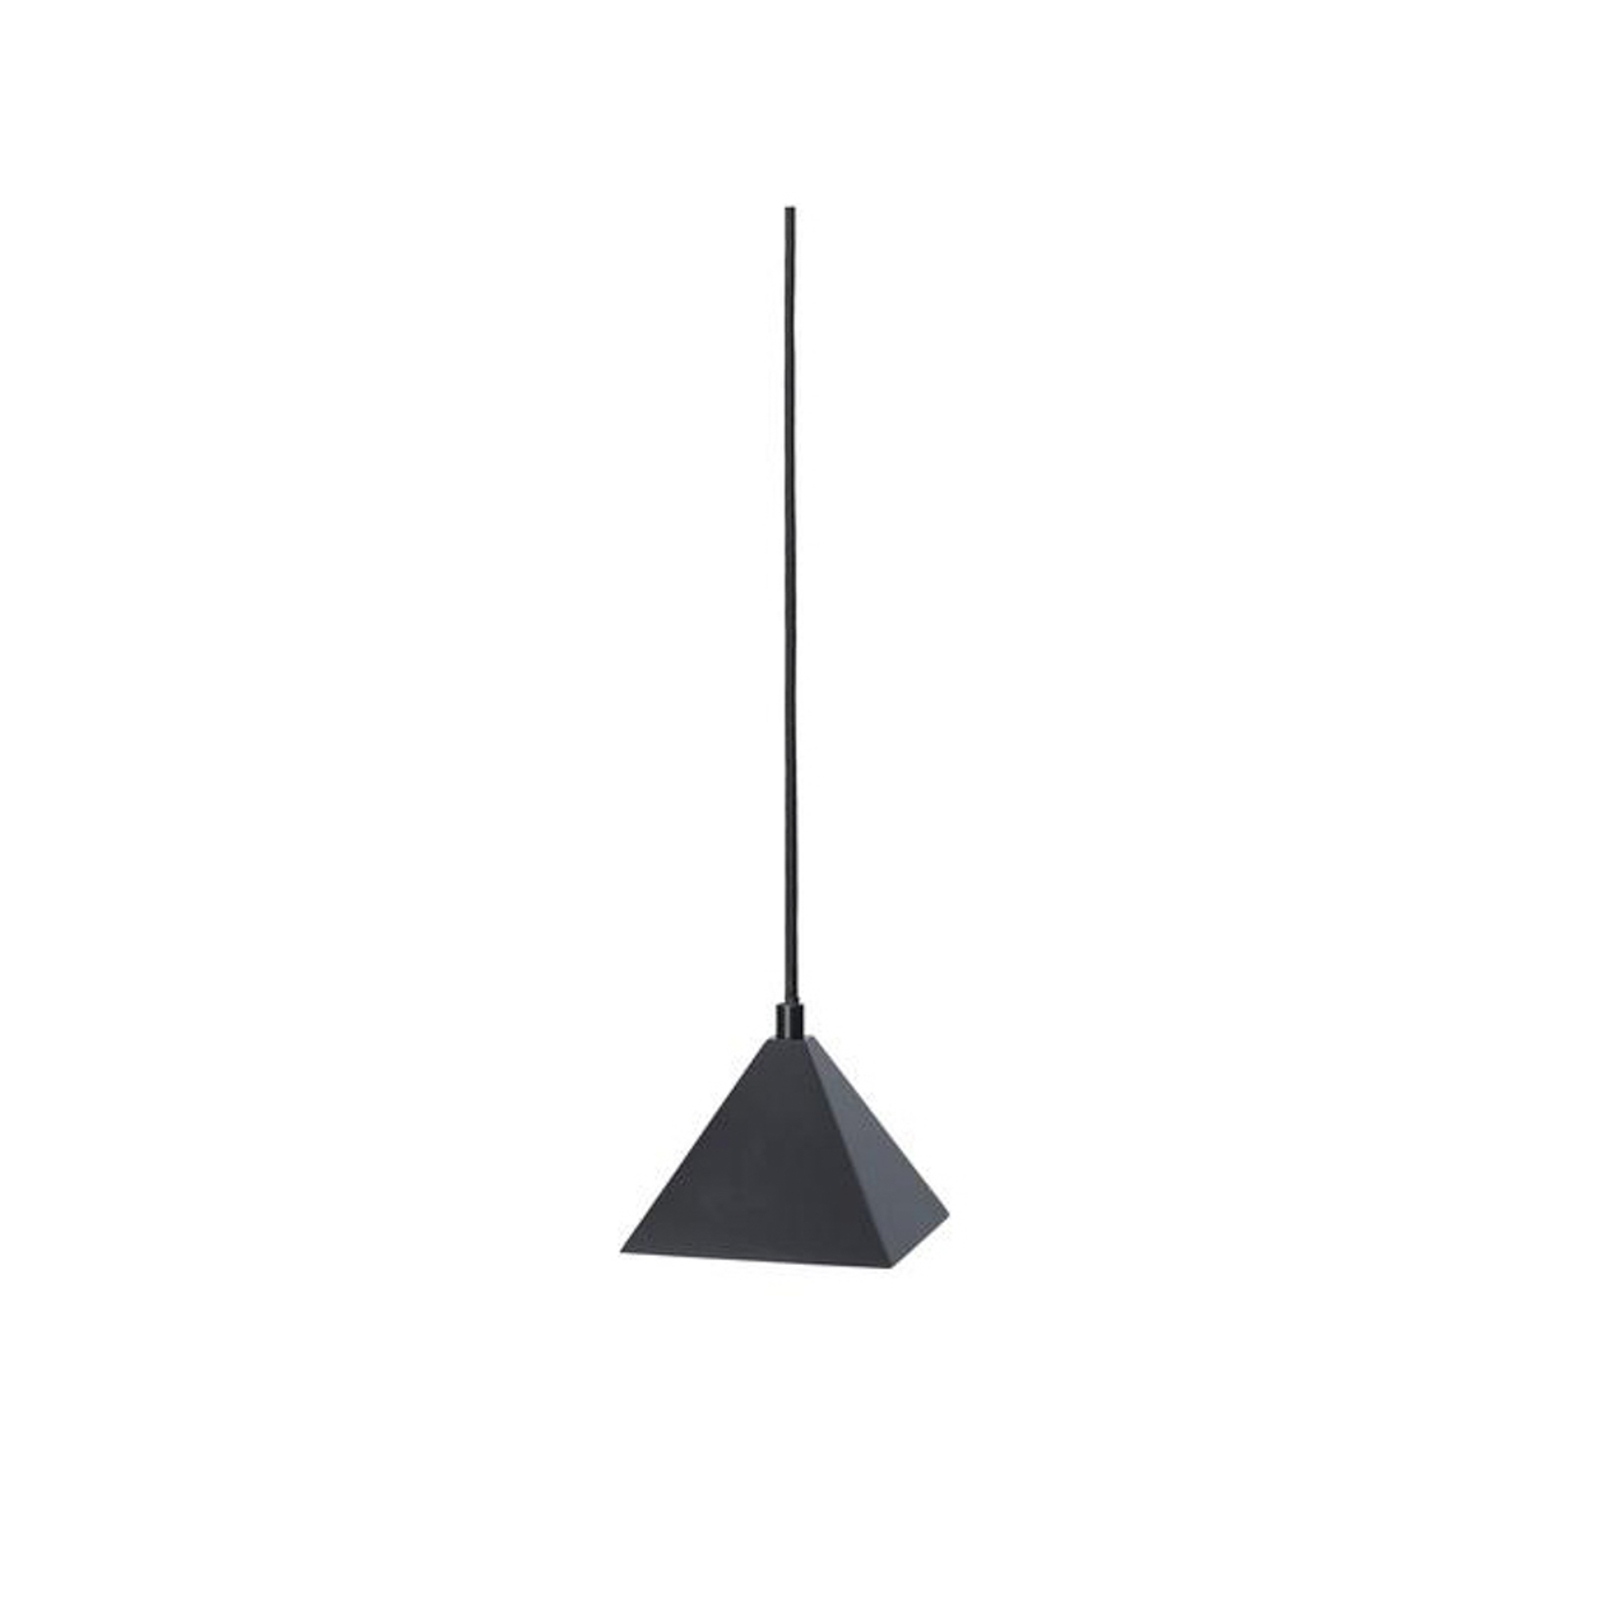 ferm LIVING Kare pendant light, black, stainless steel, 12.5 cm